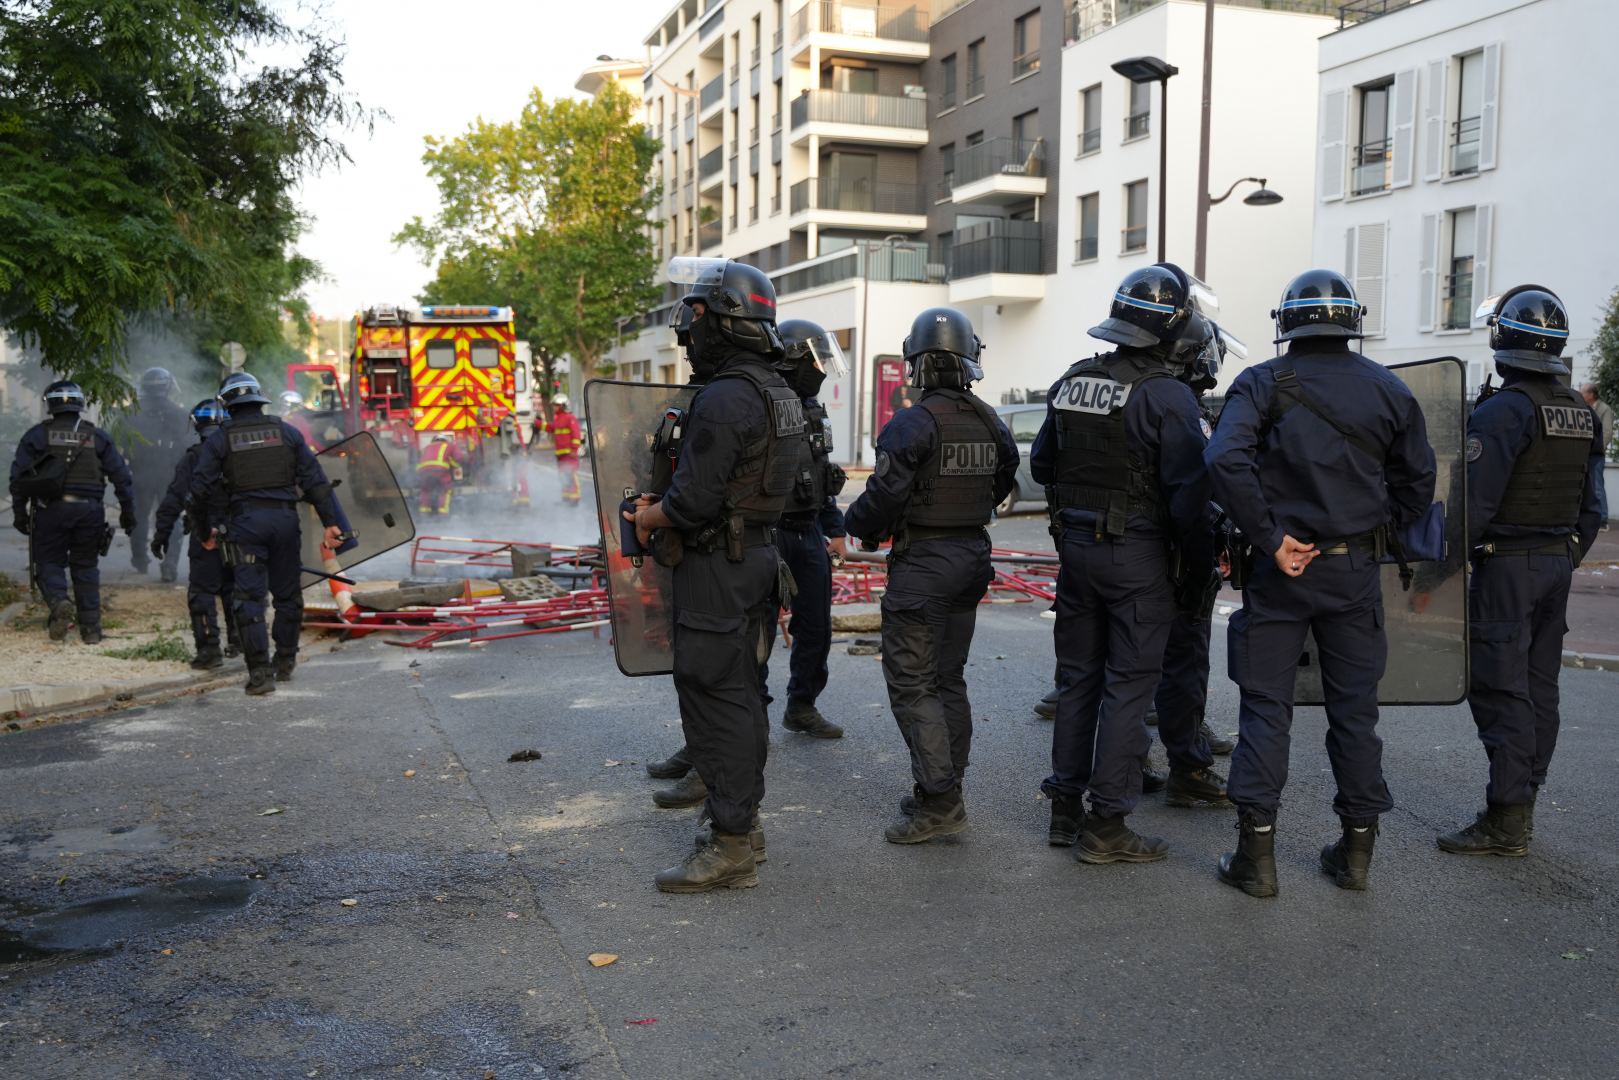 Французским властям необходимо расследовать системный и этнический характер чрезмерного применения силы полицией - депутат